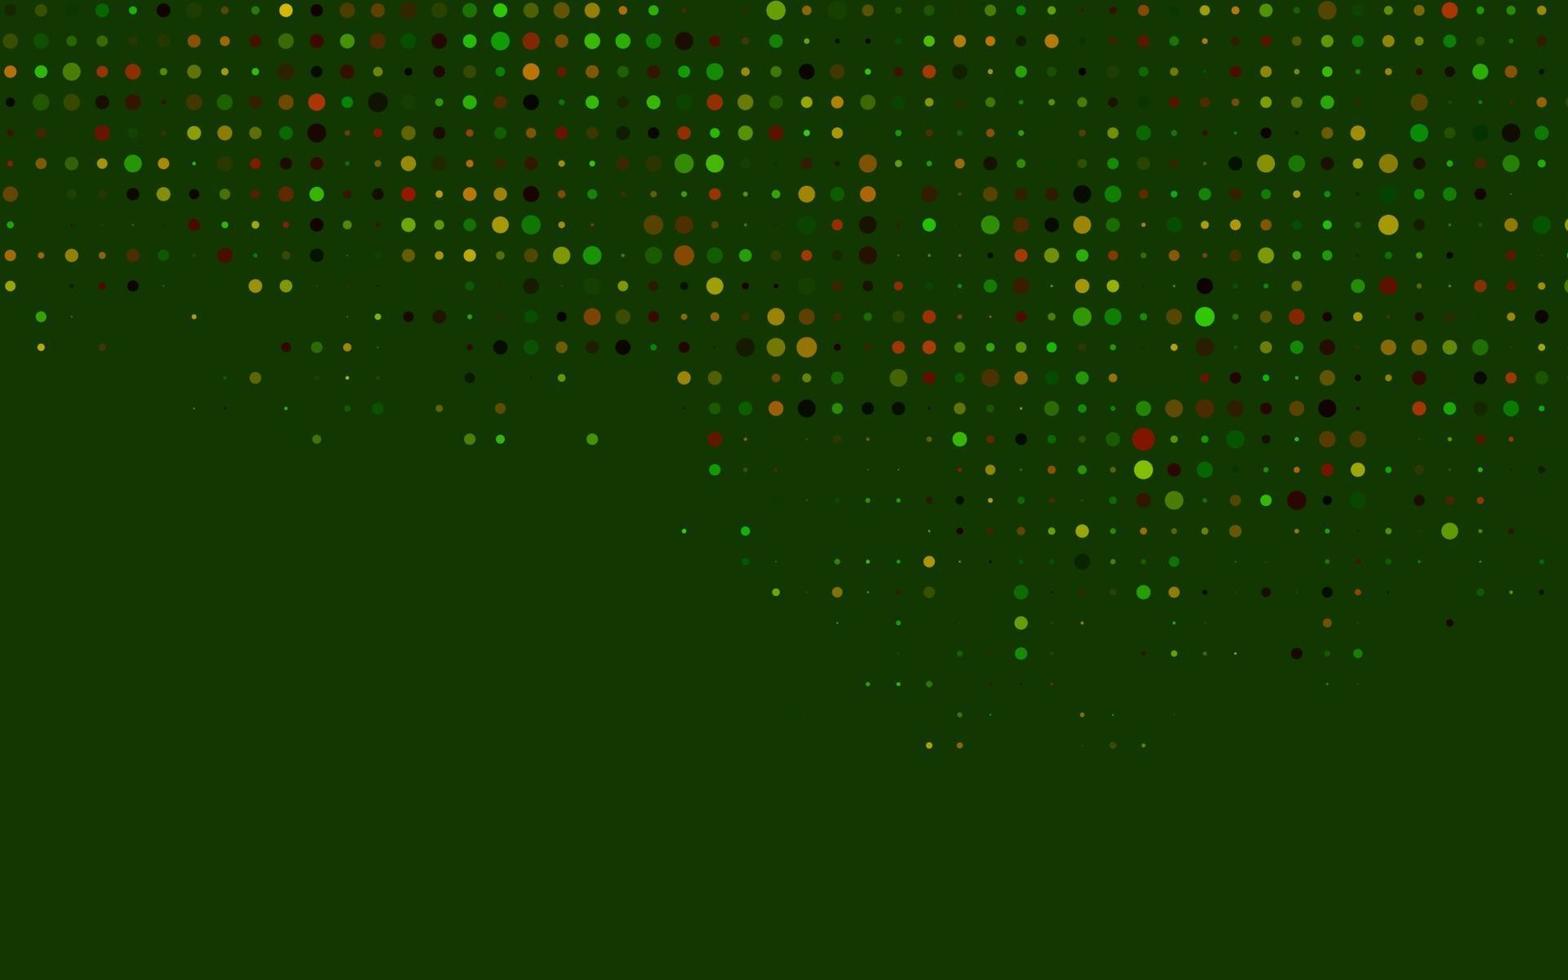 plantilla de vector verde oscuro, rojo con círculos.